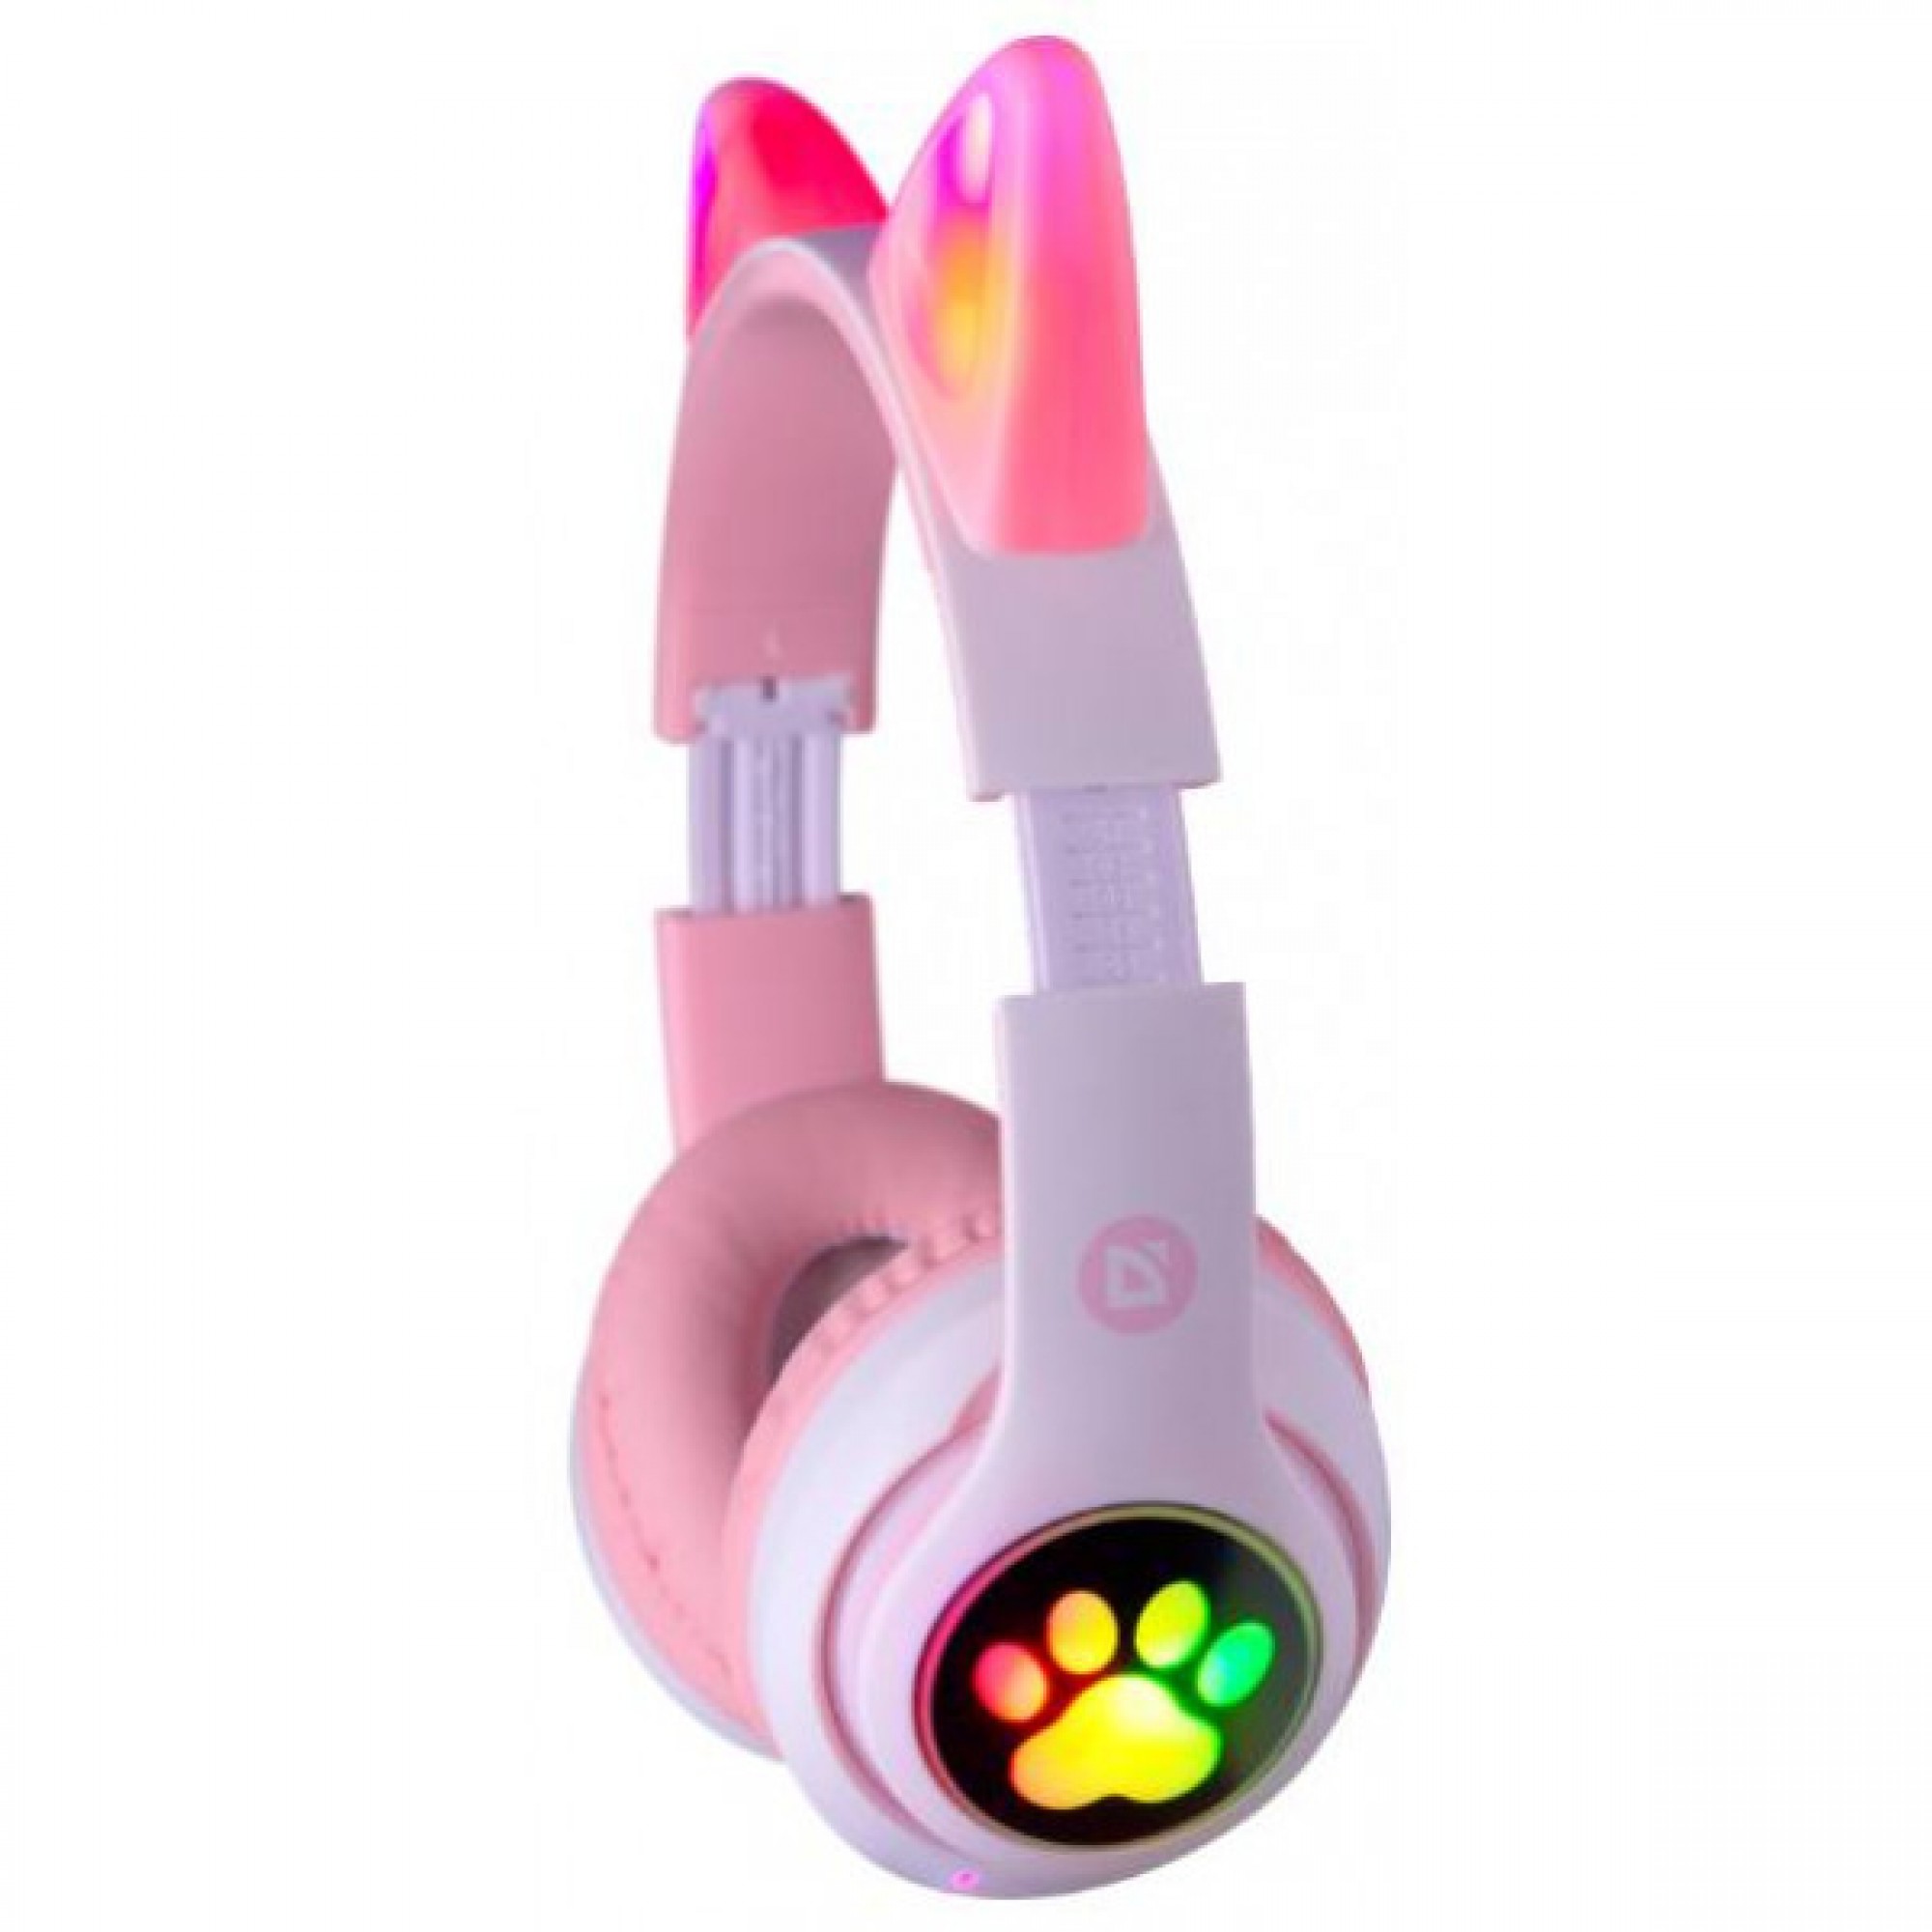 MP3 Bluetooth Навушники Defender B585 біло-розовий